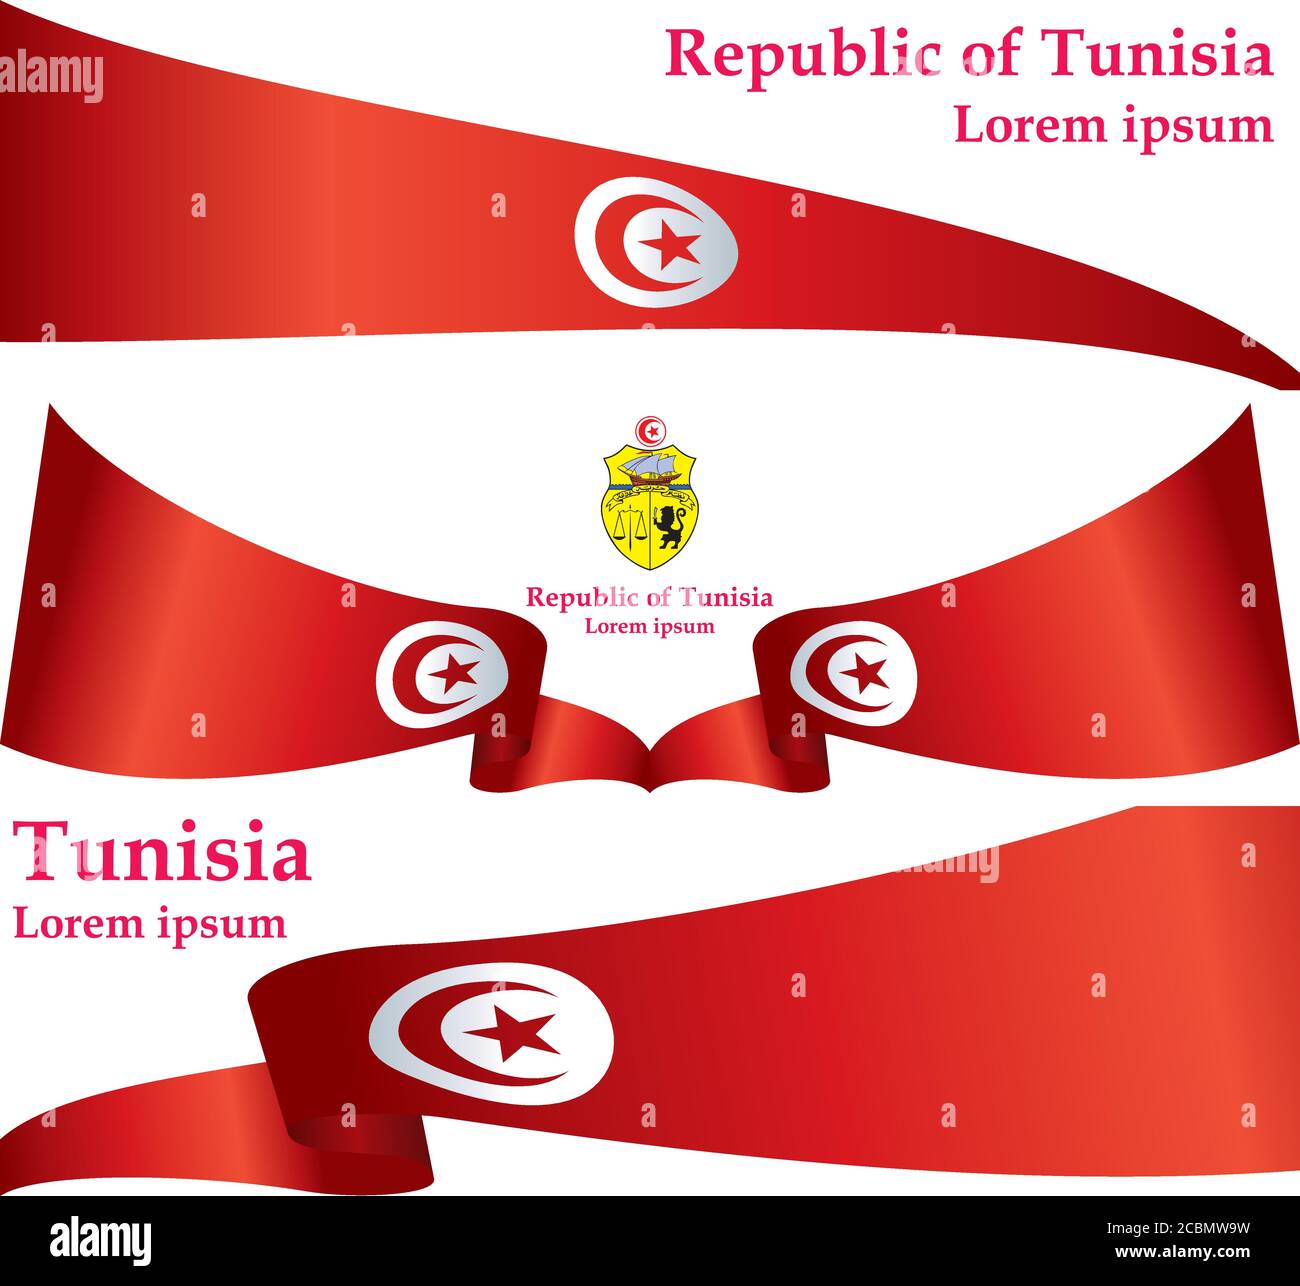 Bandera de Túnez, República de Túnez. Plantilla para el diseño de premios, un documento oficial con la bandera de Túnez. Ilustración vectorial brillante y colorida. Ilustración del Vector